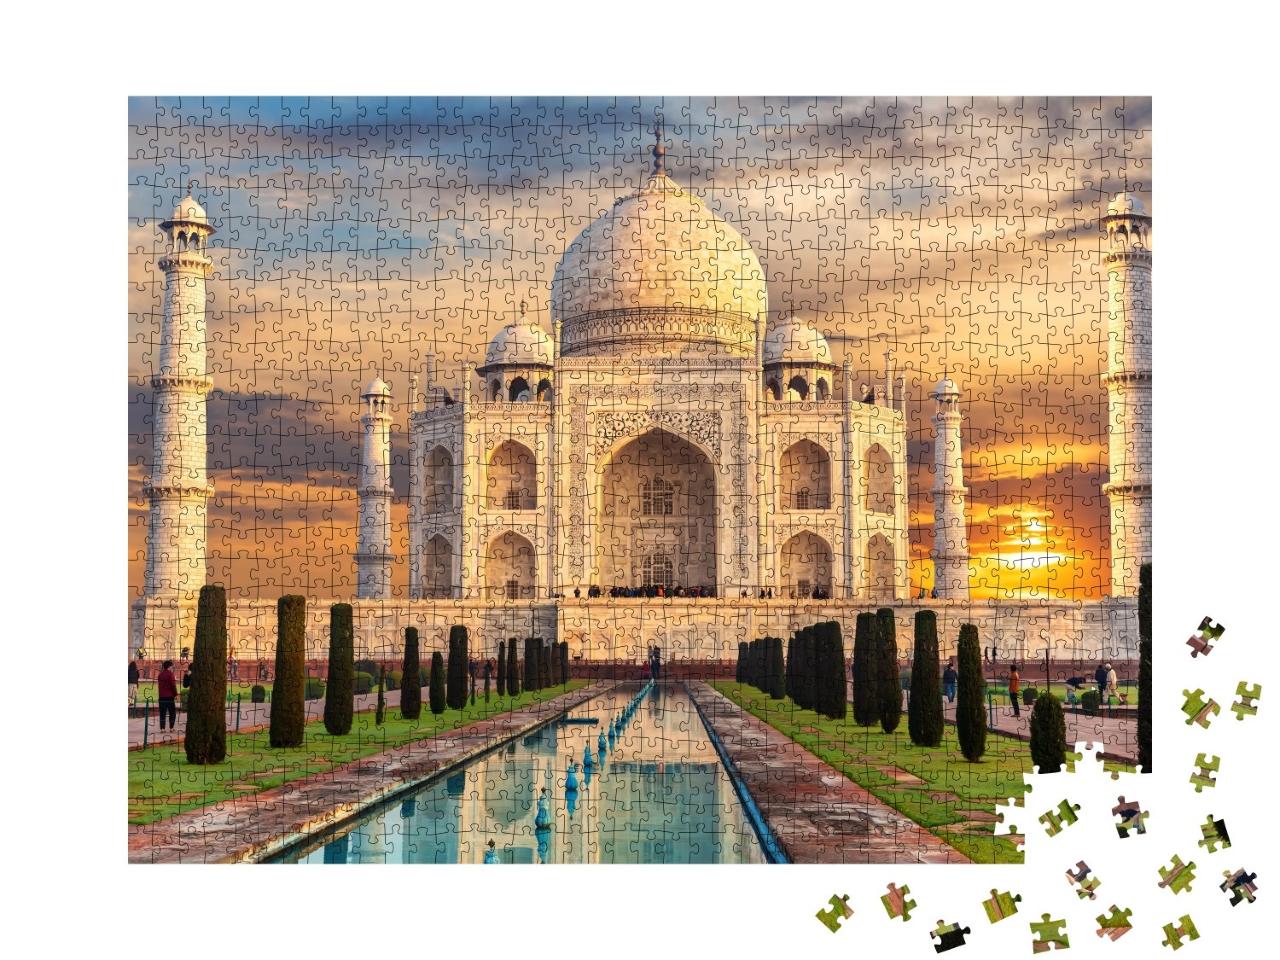 Puzzle de 1000 pièces « Taj Mahal au coucher du soleil, Inde, Agra »